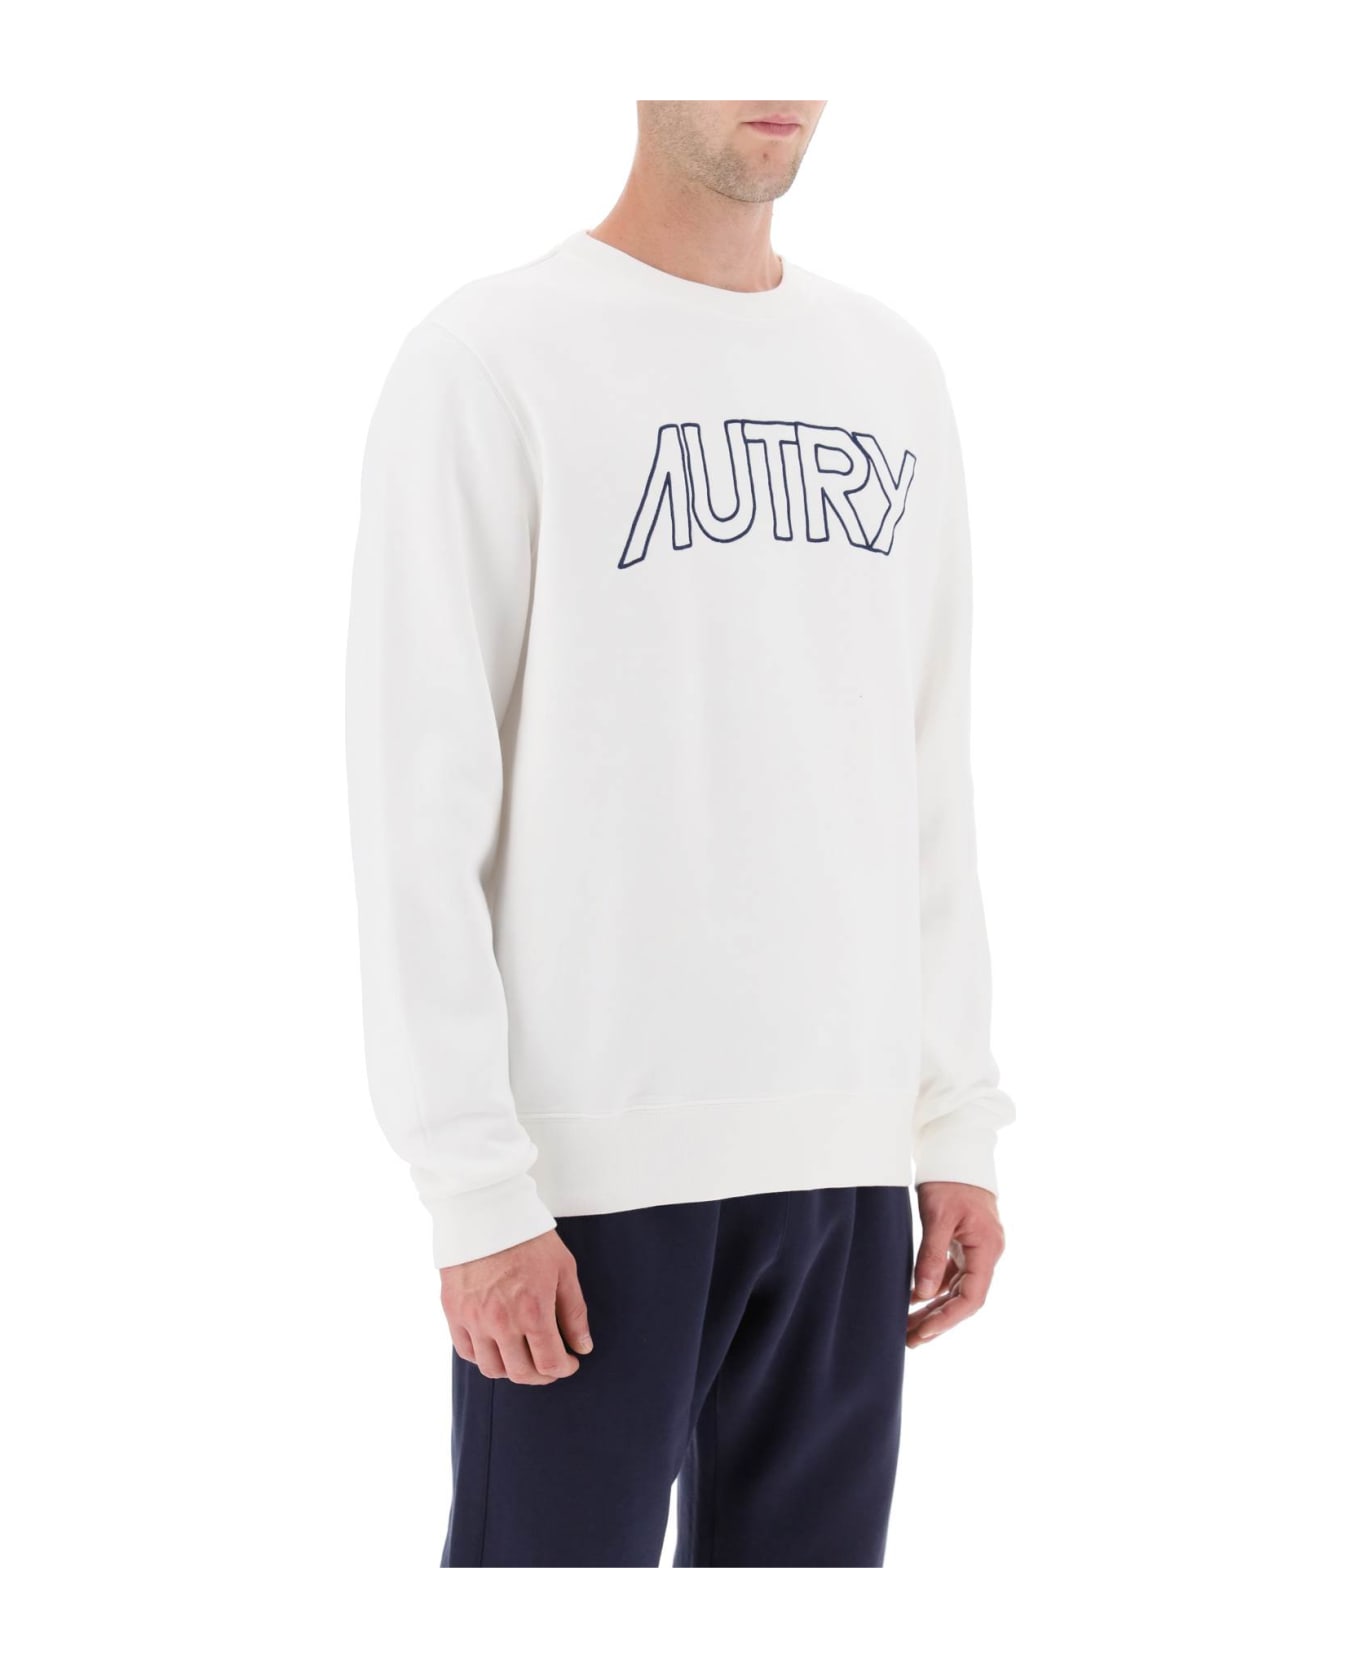 Autry Logo Icon Sweatshirt - White